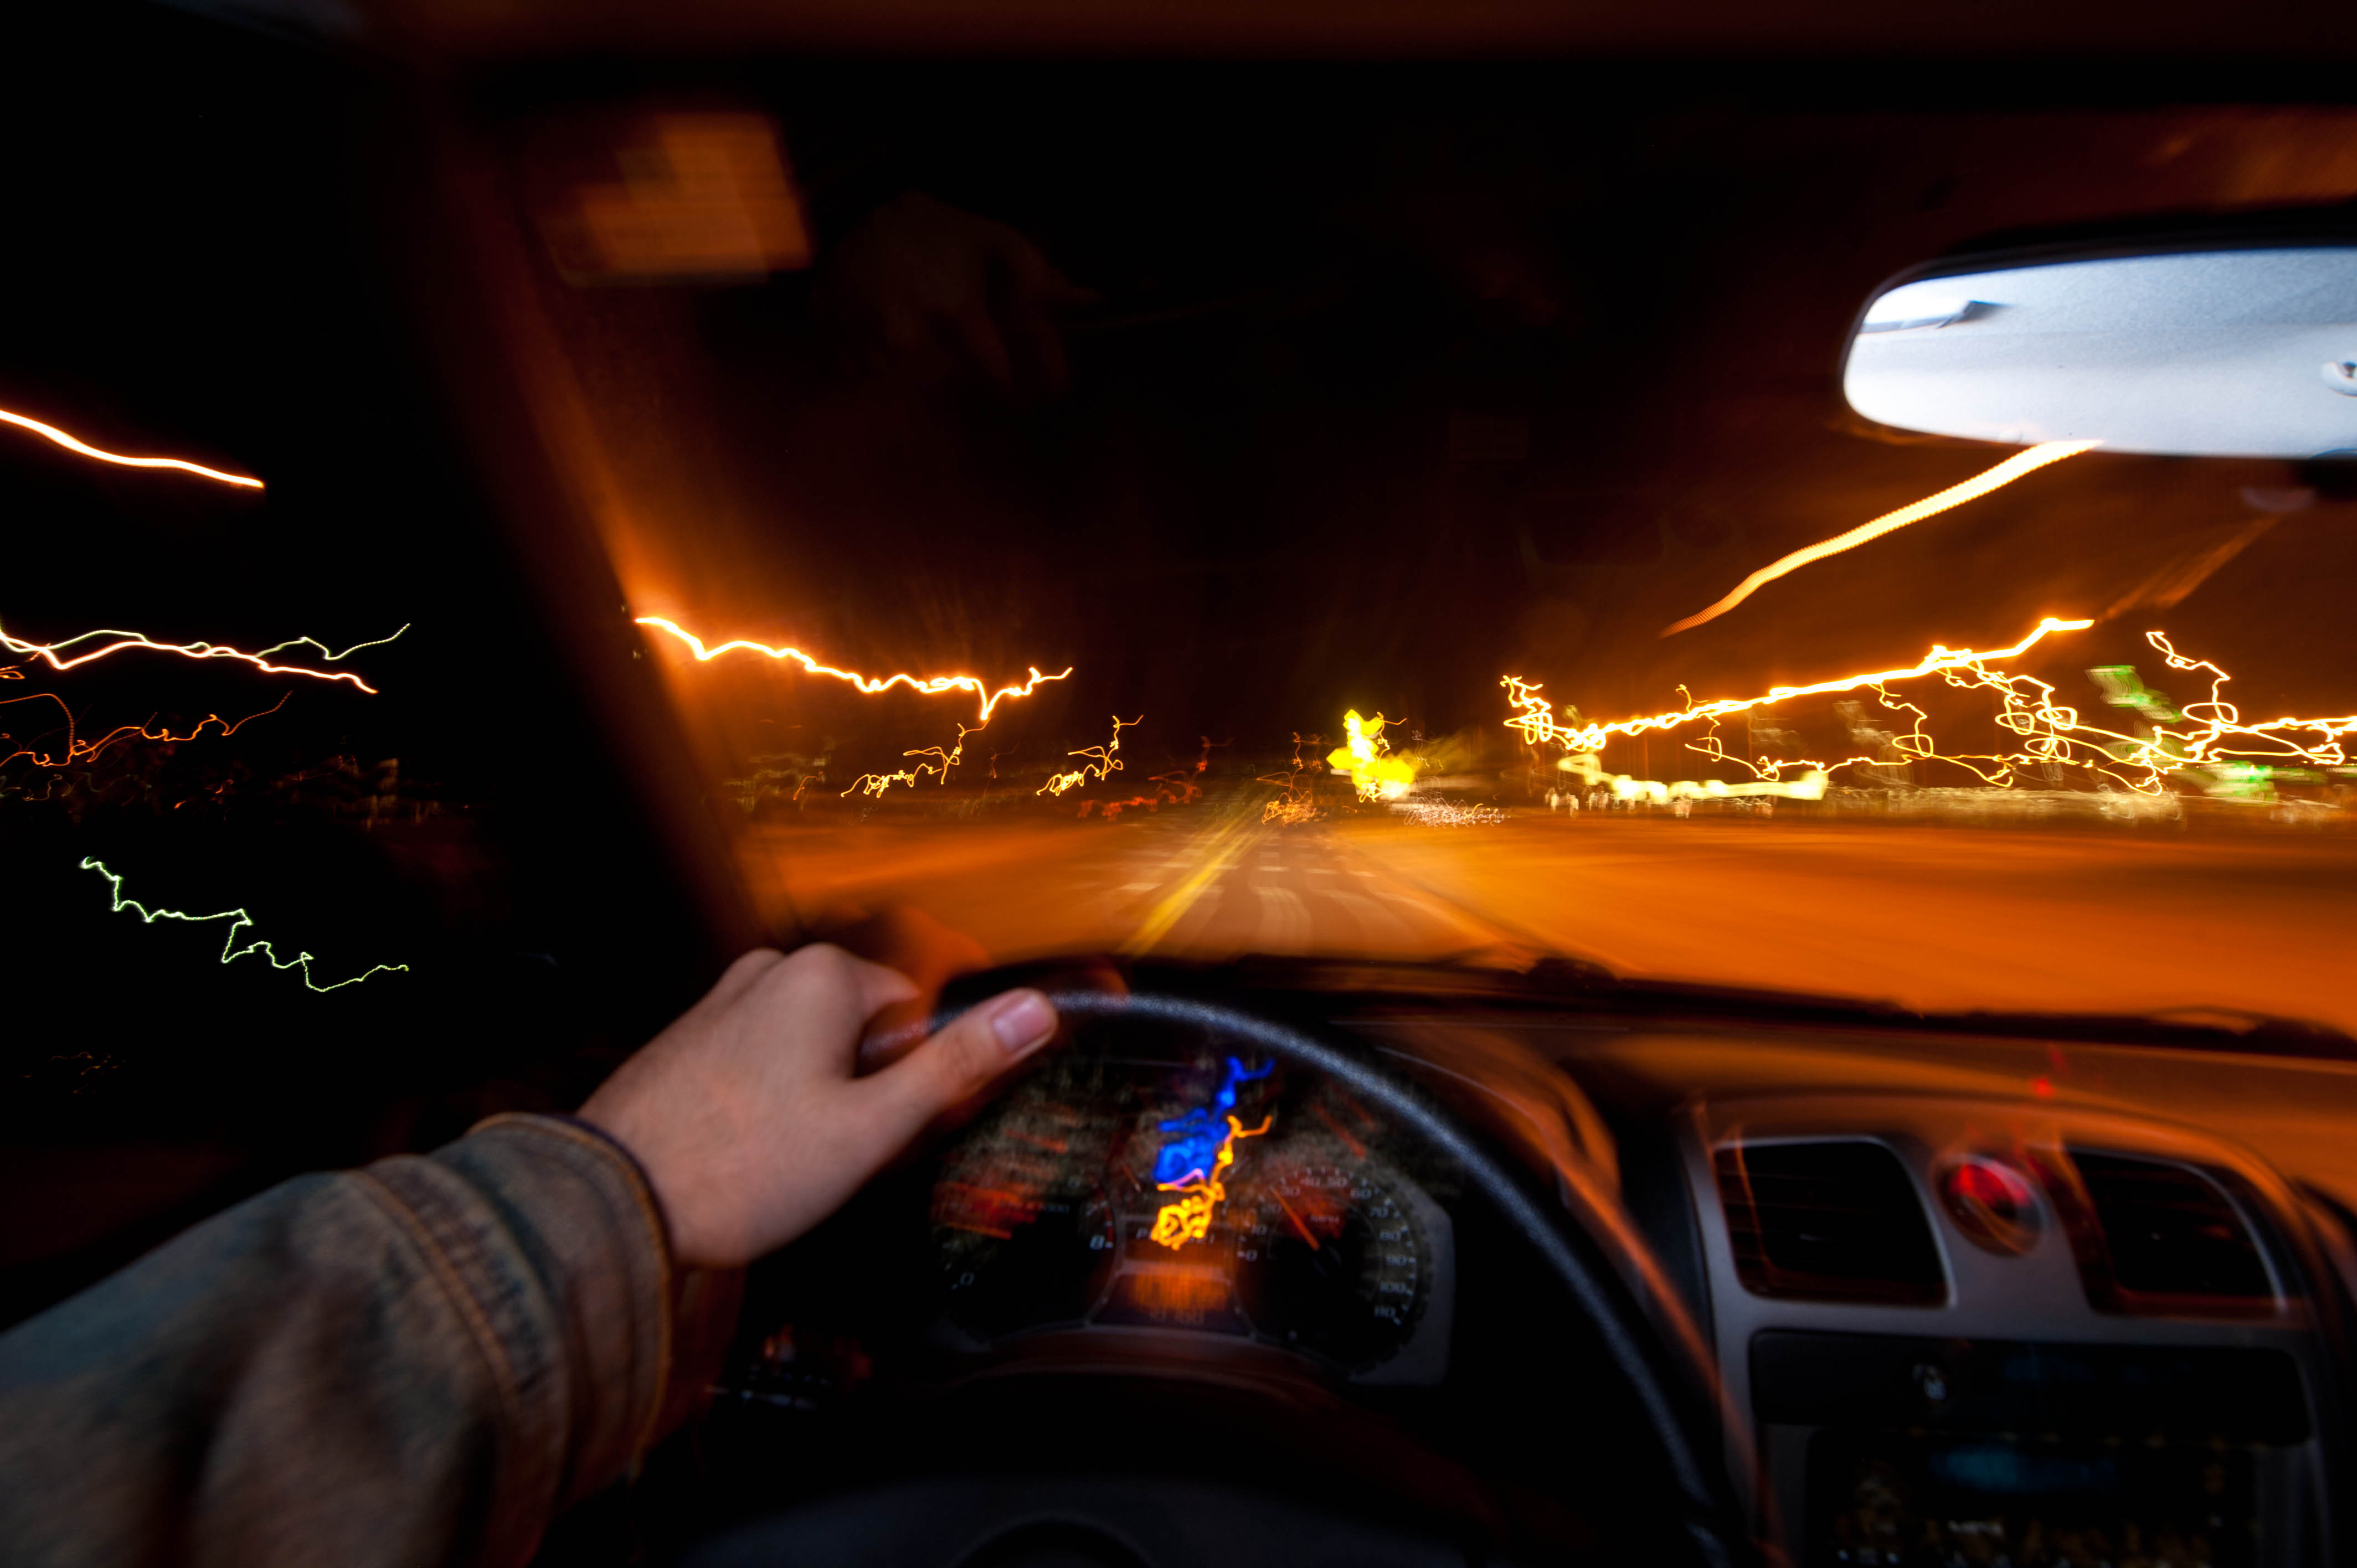 Видео скорость автомобиля. Машина на скорости. Машина ночью. За рулем машины ночью. Ночь дорога авто.